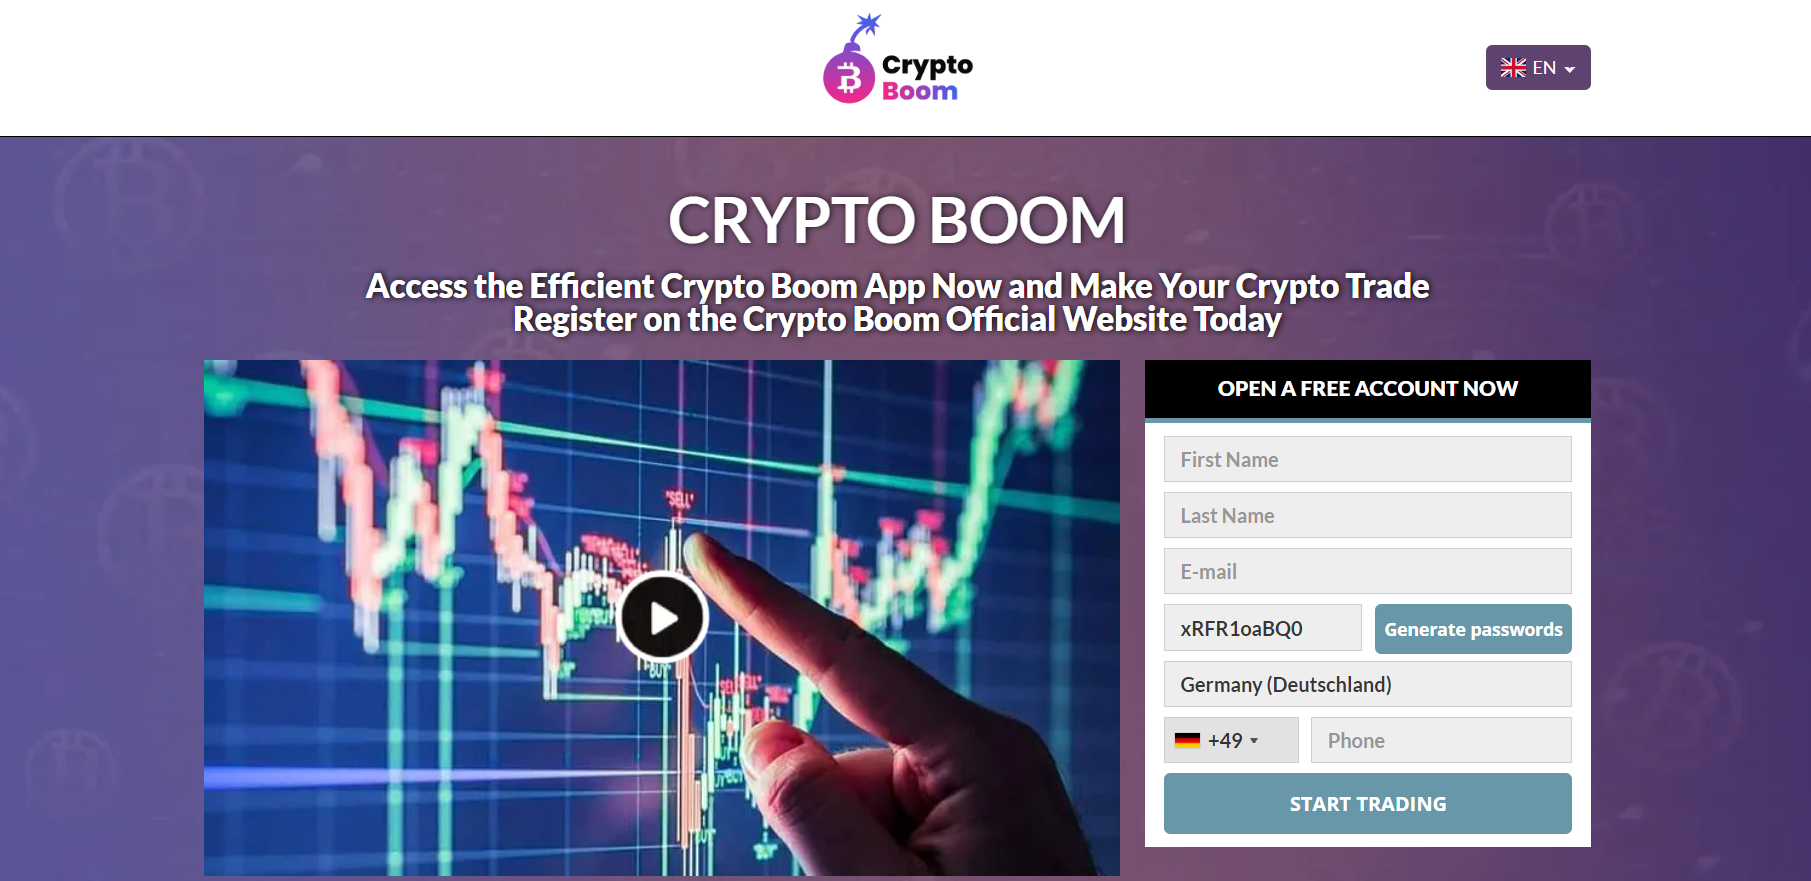 o site oficial do Crypto Boom